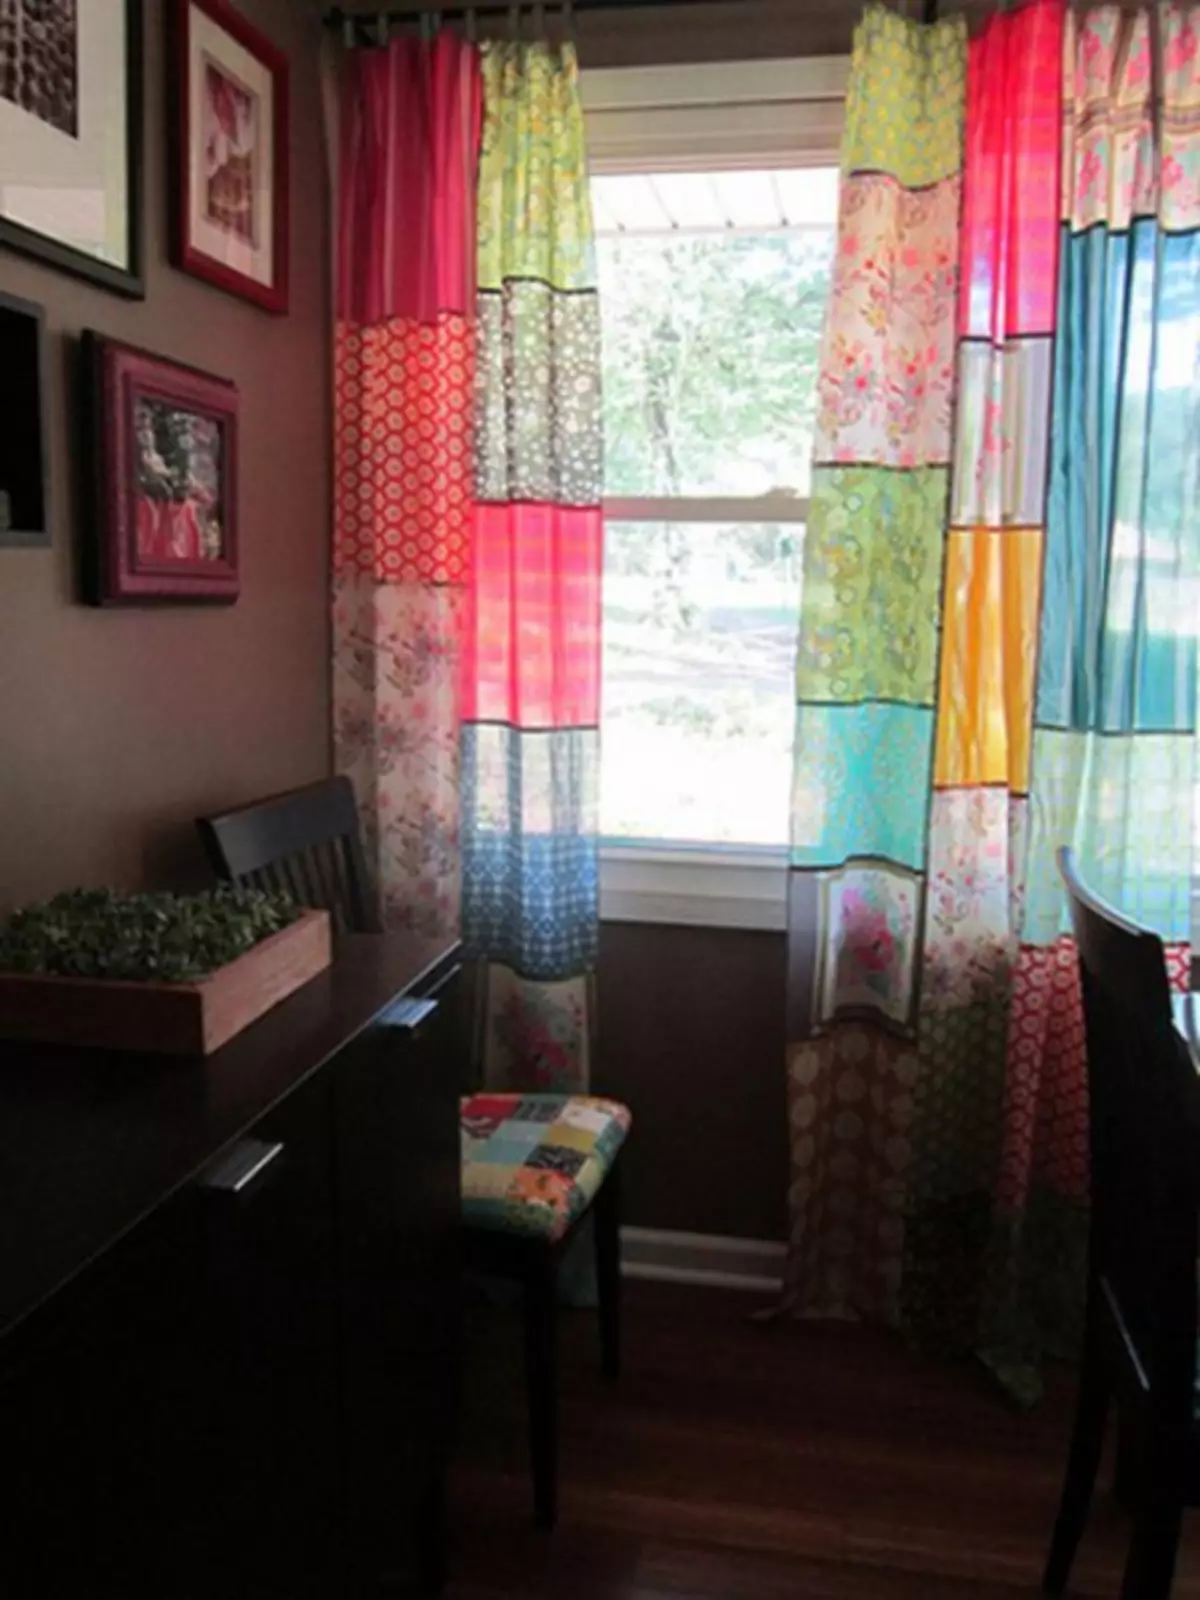 Les cortines a l'estil de patchwork fan-ho vosaltres mateixos